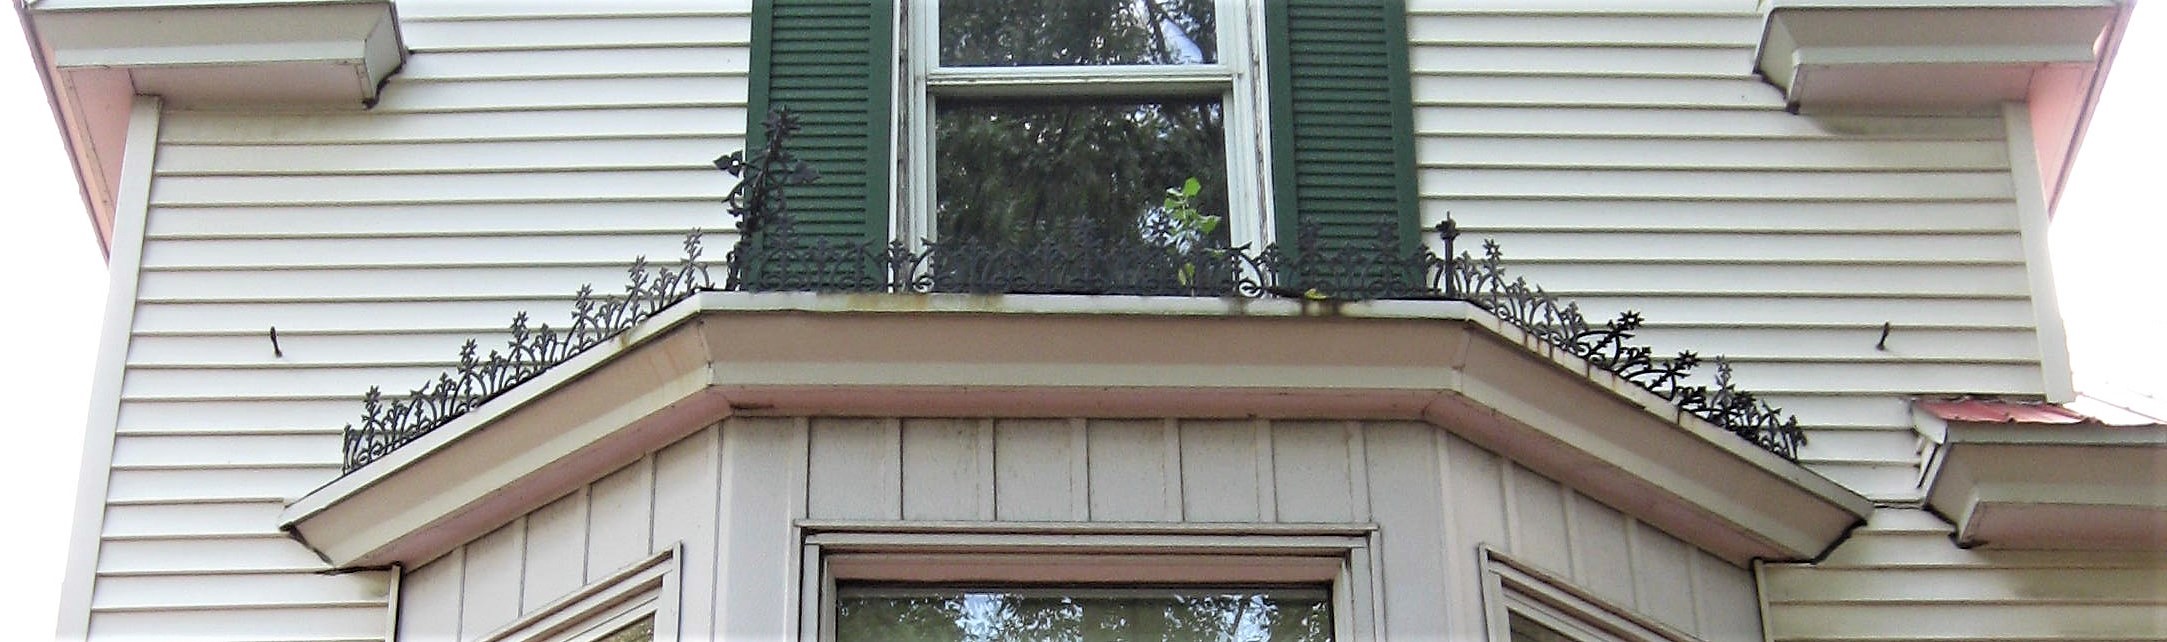 1. Il manque le haut du pic d’angle (à droite) et la clôture décorative est chambranlante.